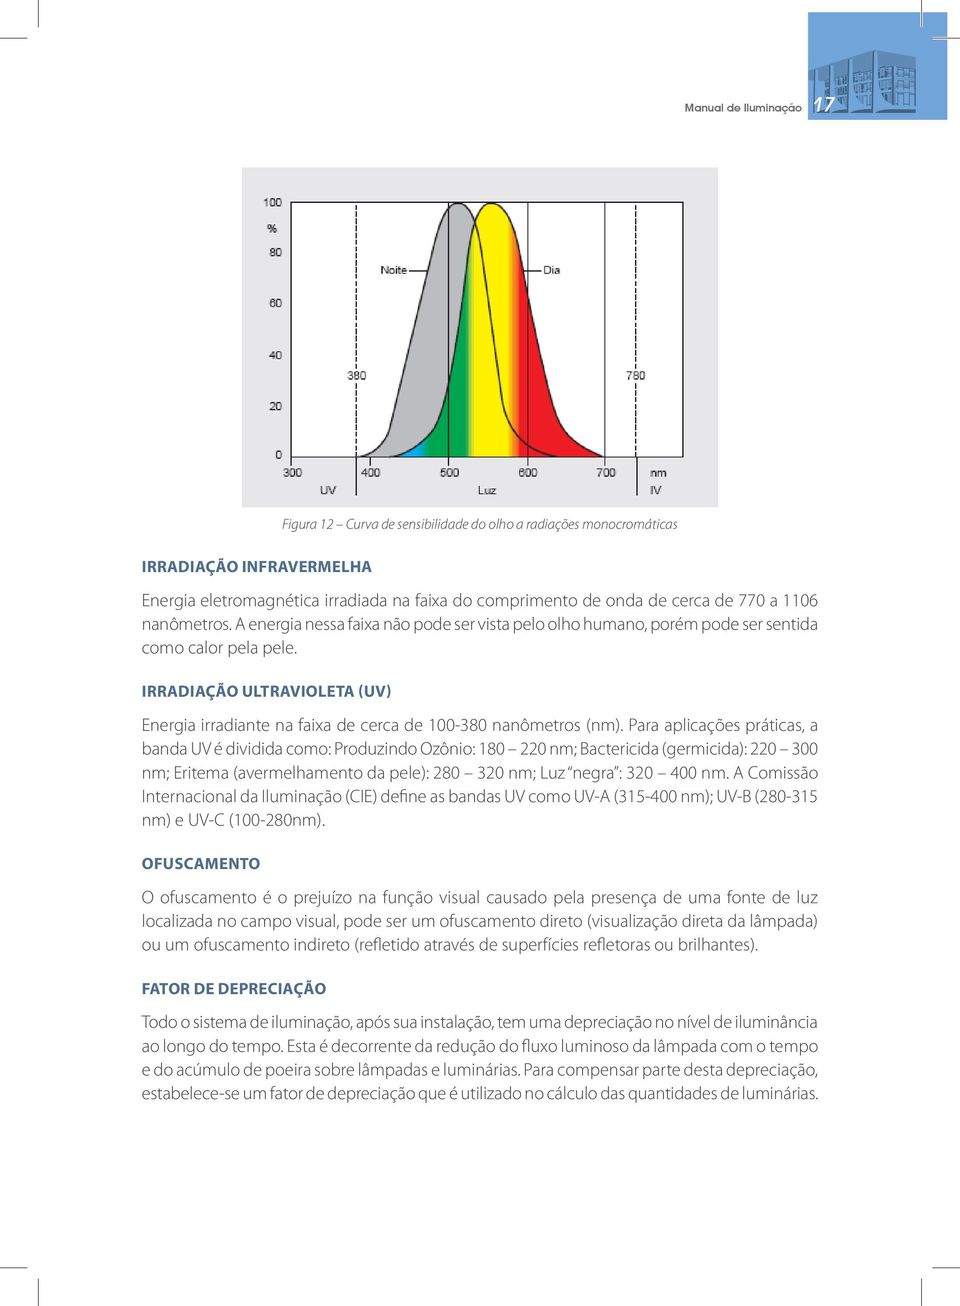 IRRADIAÇÃO ULTRAVIOLETA (UV) Energia irradiante na faixa de cerca de 100-380 nanômetros (nm).